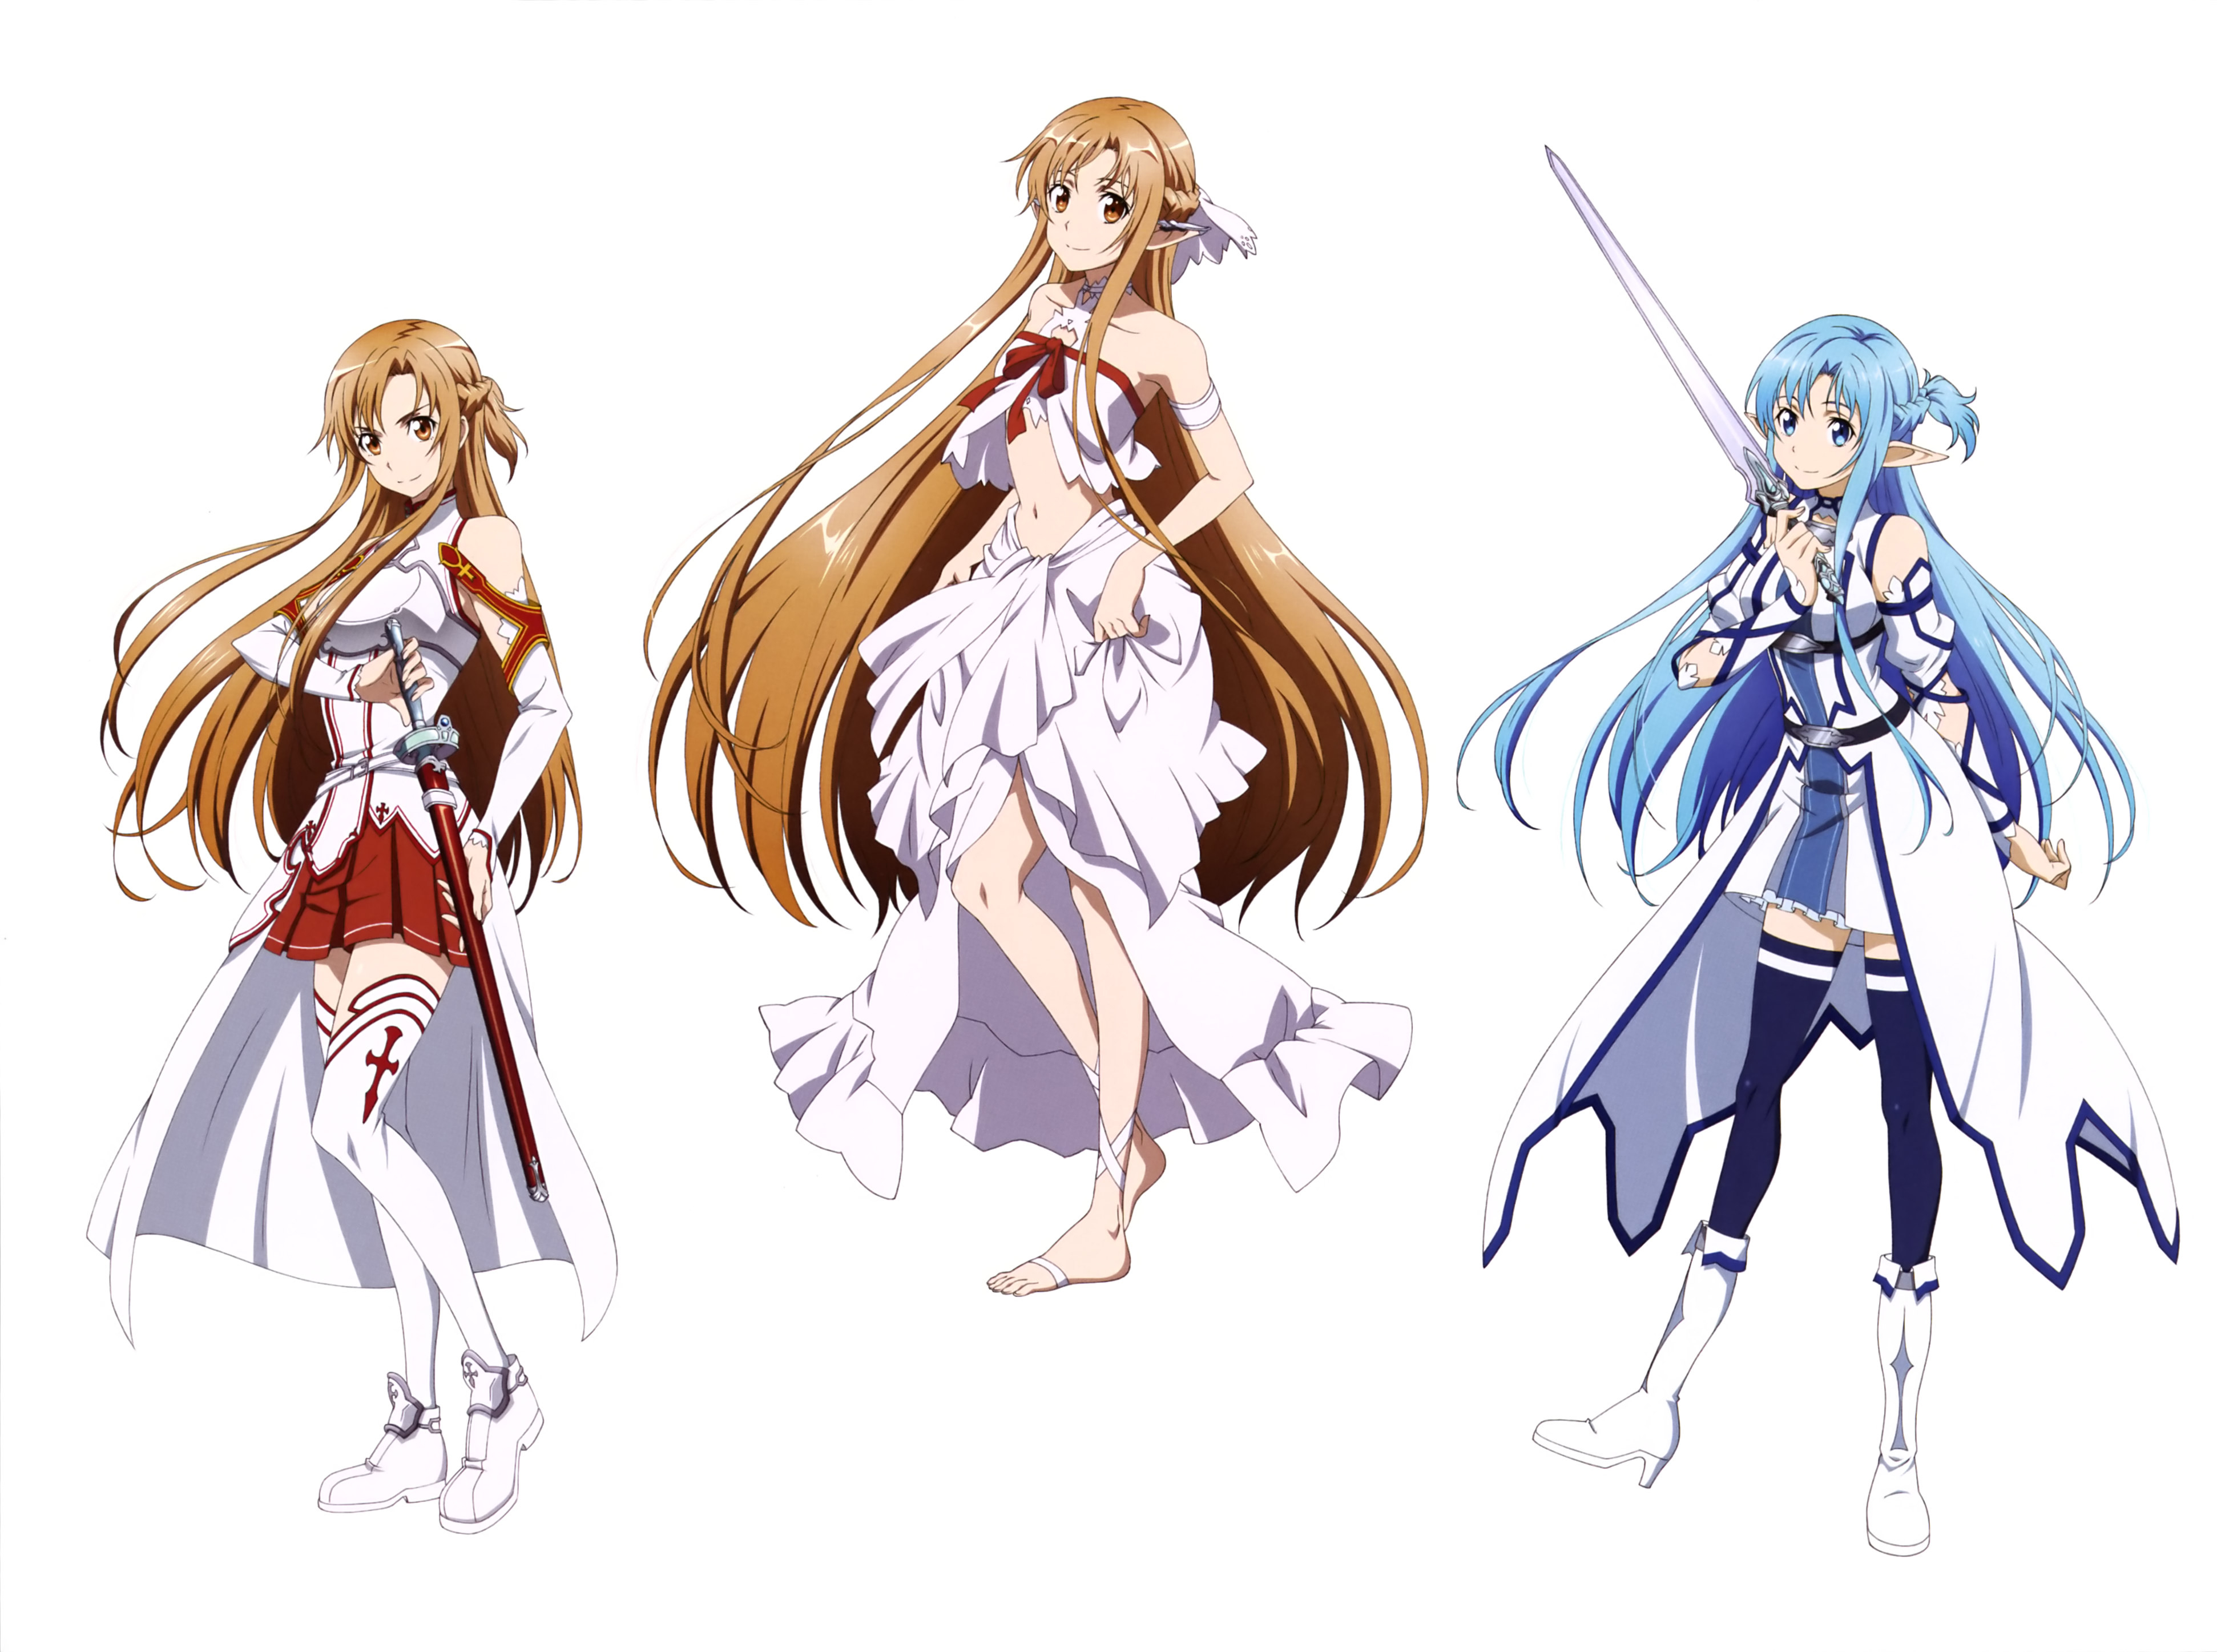 Free download wallpaper Anime, Sword Art Online, Asuna Yuuki, Sword Art Online Ii on your PC desktop